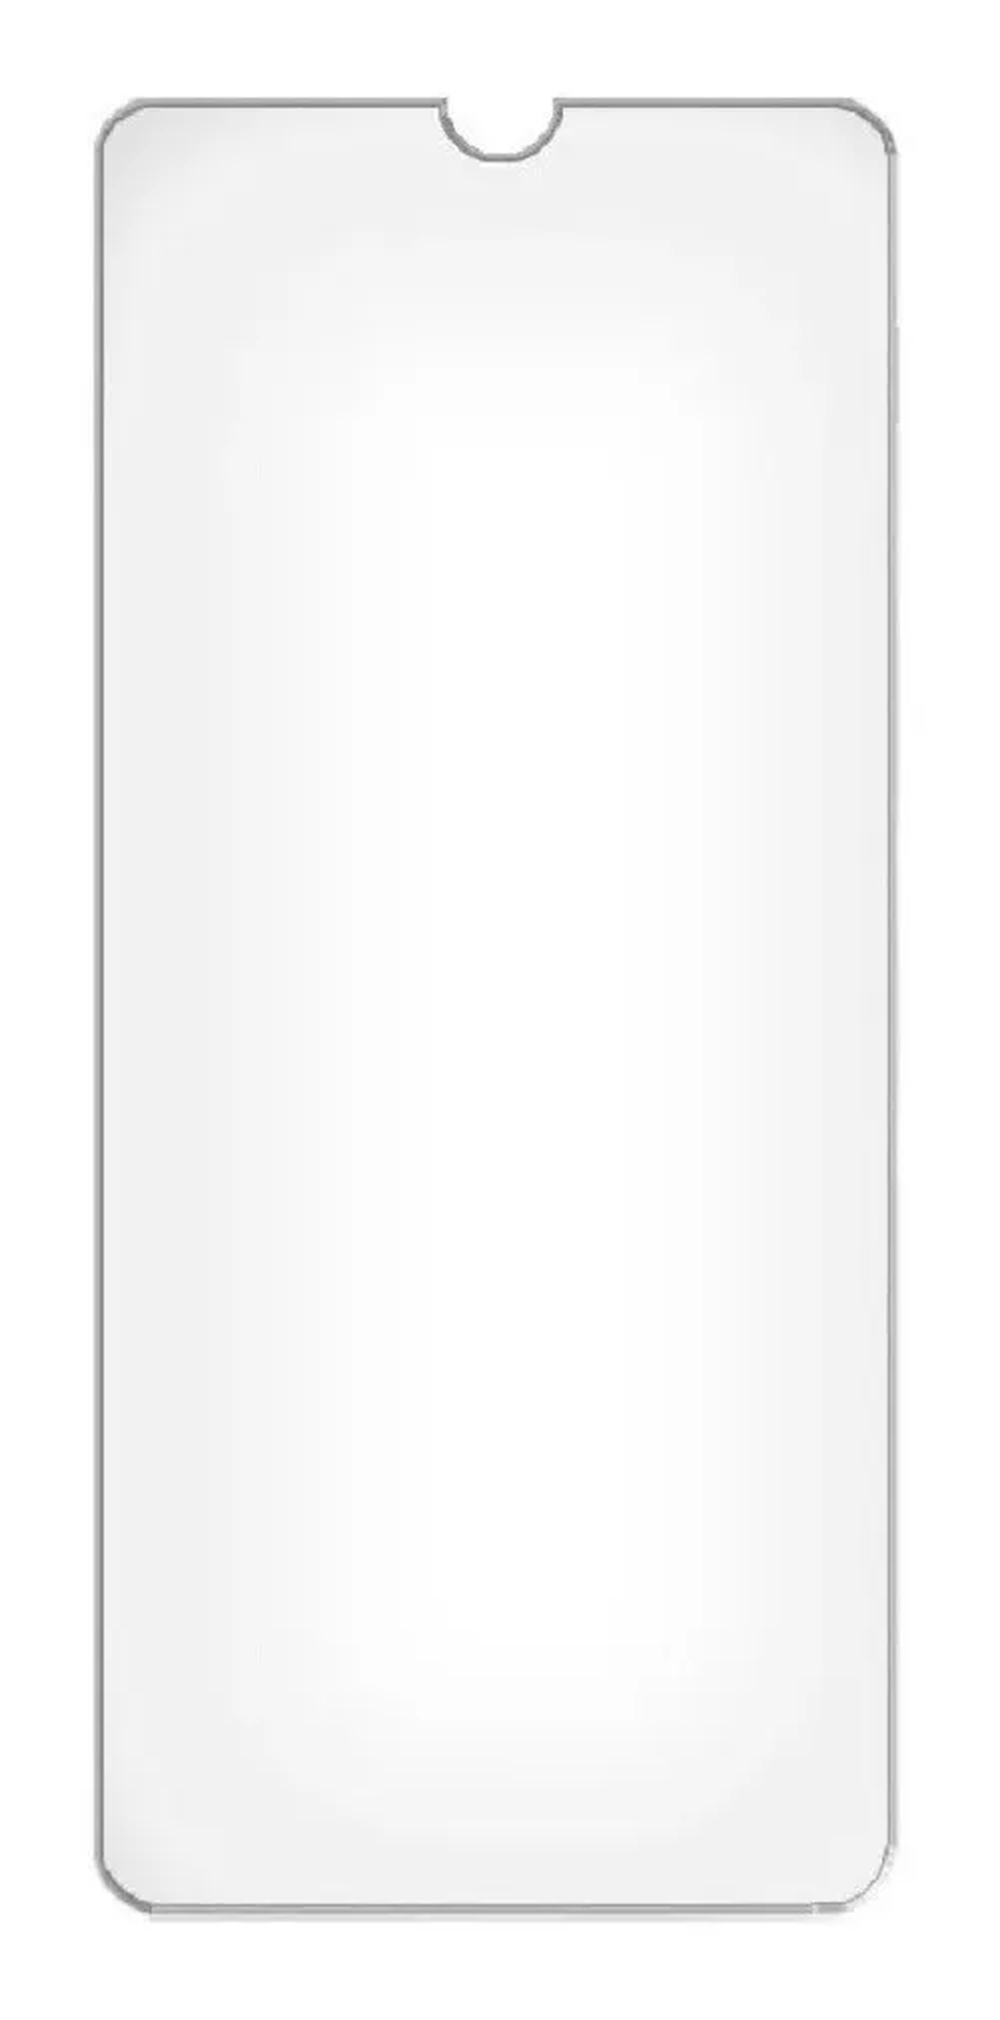 Pelicula de vidro P/ Celular A32 4G Samsung